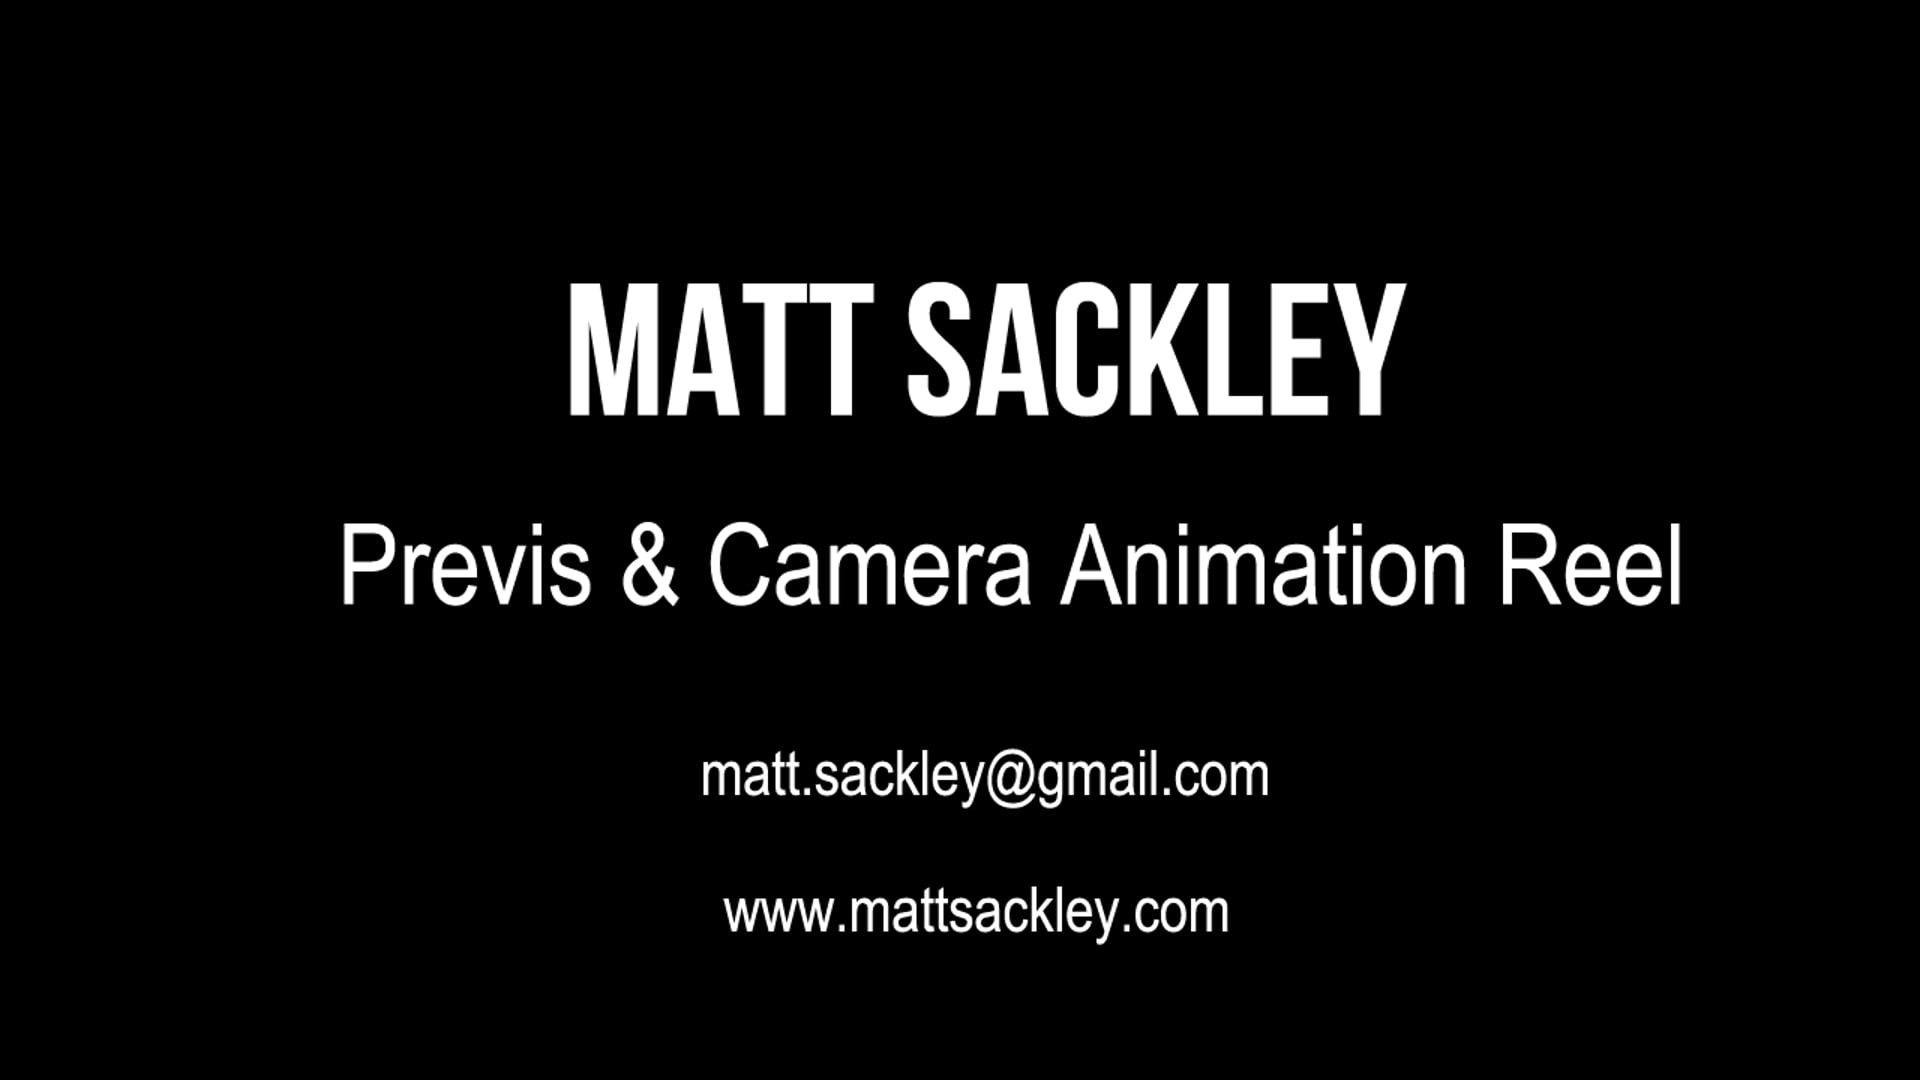 Matt Sackley - Previs & Camera Animation Reel - 2020